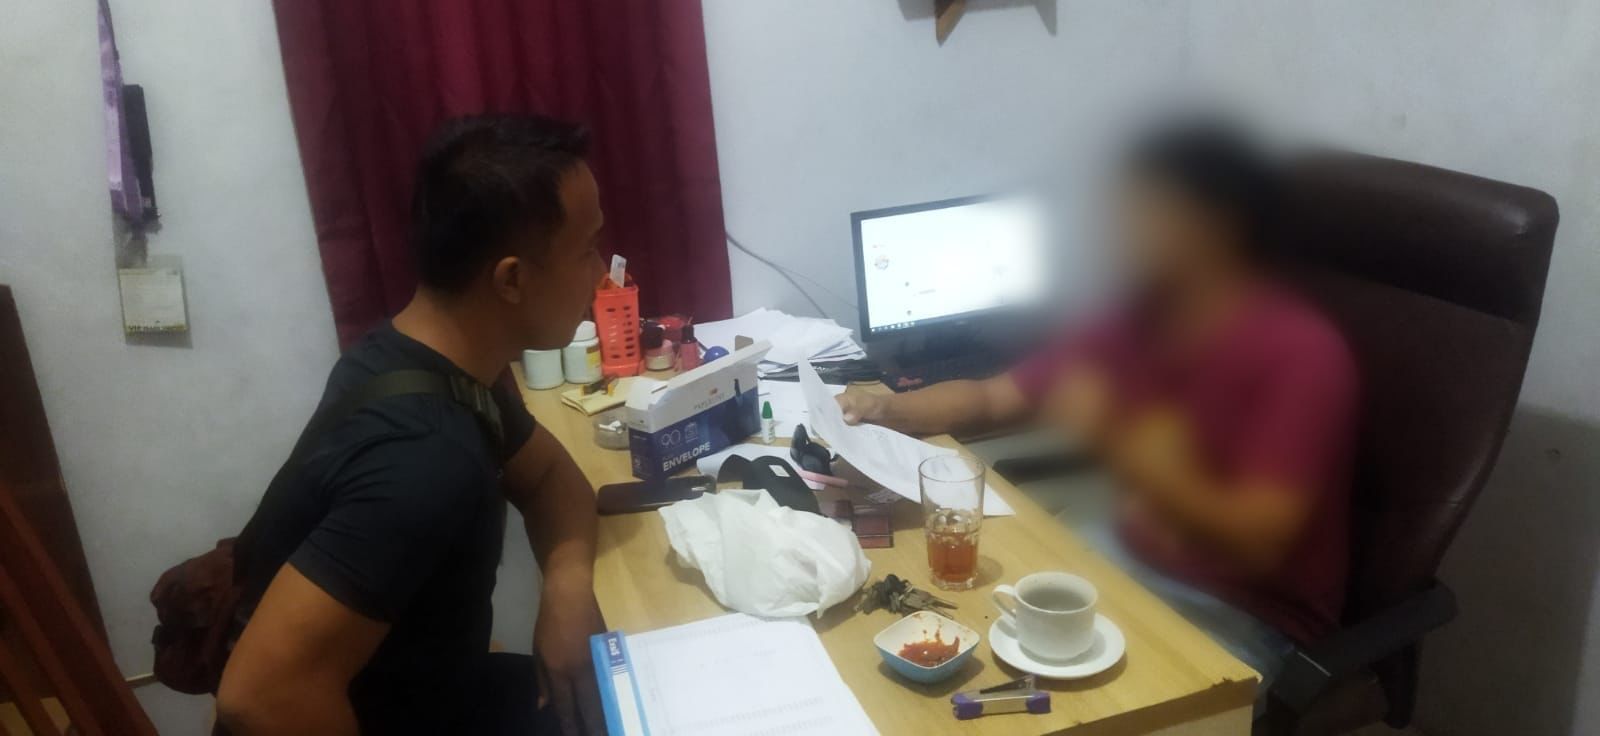 Petugas Satuan Narkoba Polres Sukabumi Tangkap Pelaku di Meja Kerjanya Sembunyikan Kertas Papir dan Batang Ganja Kering (Sumber : Istimewa)